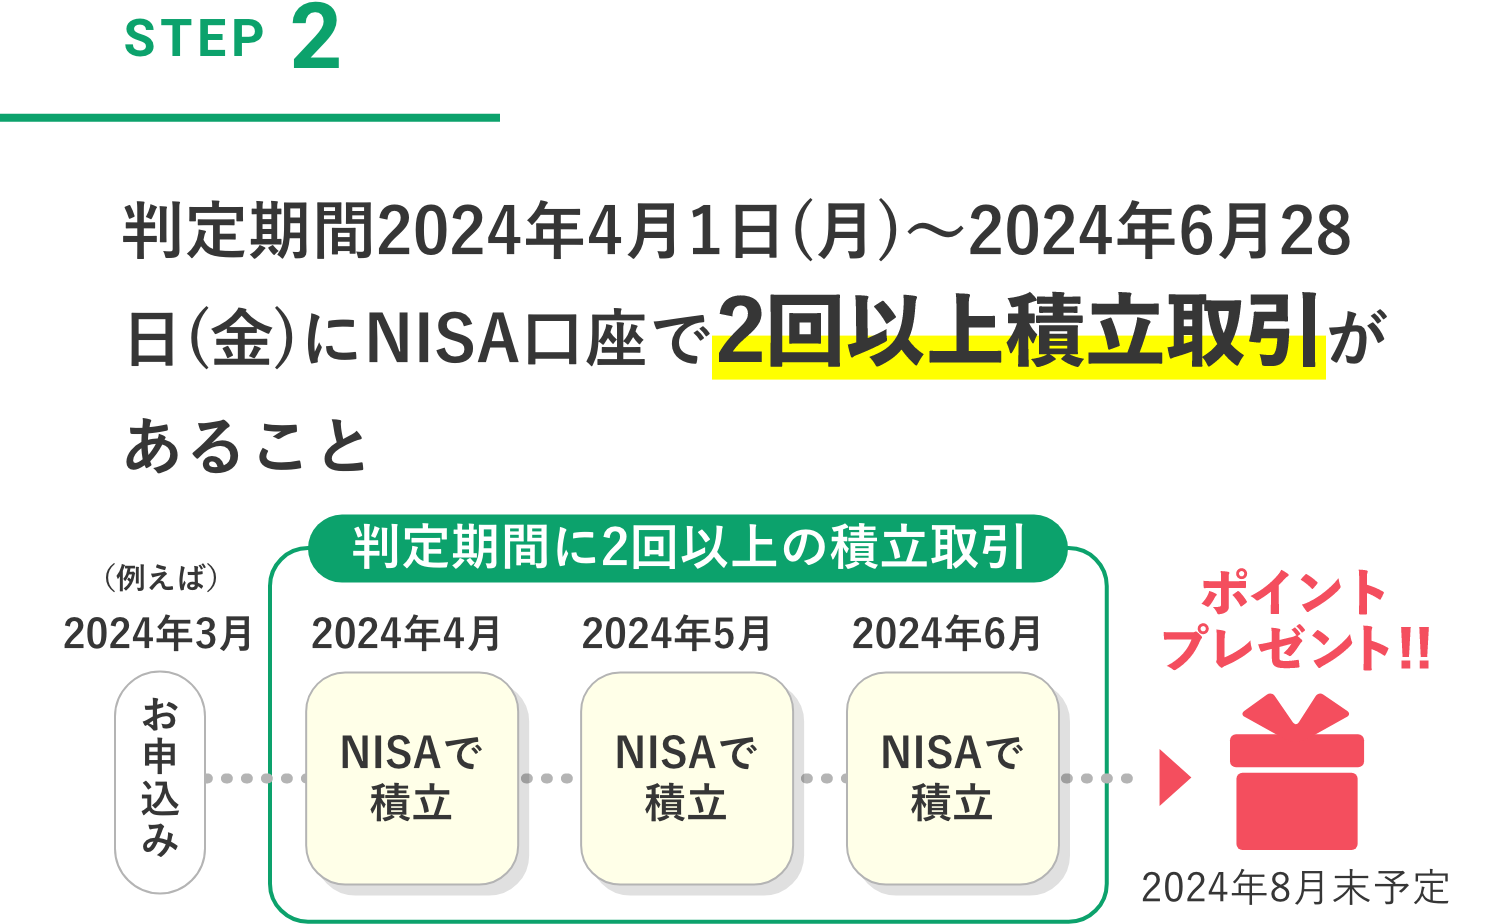 STEP2 判定期間2024年4月1日(月)～2024年6月28日(金)にNISA口座で2回以上積立取引があること